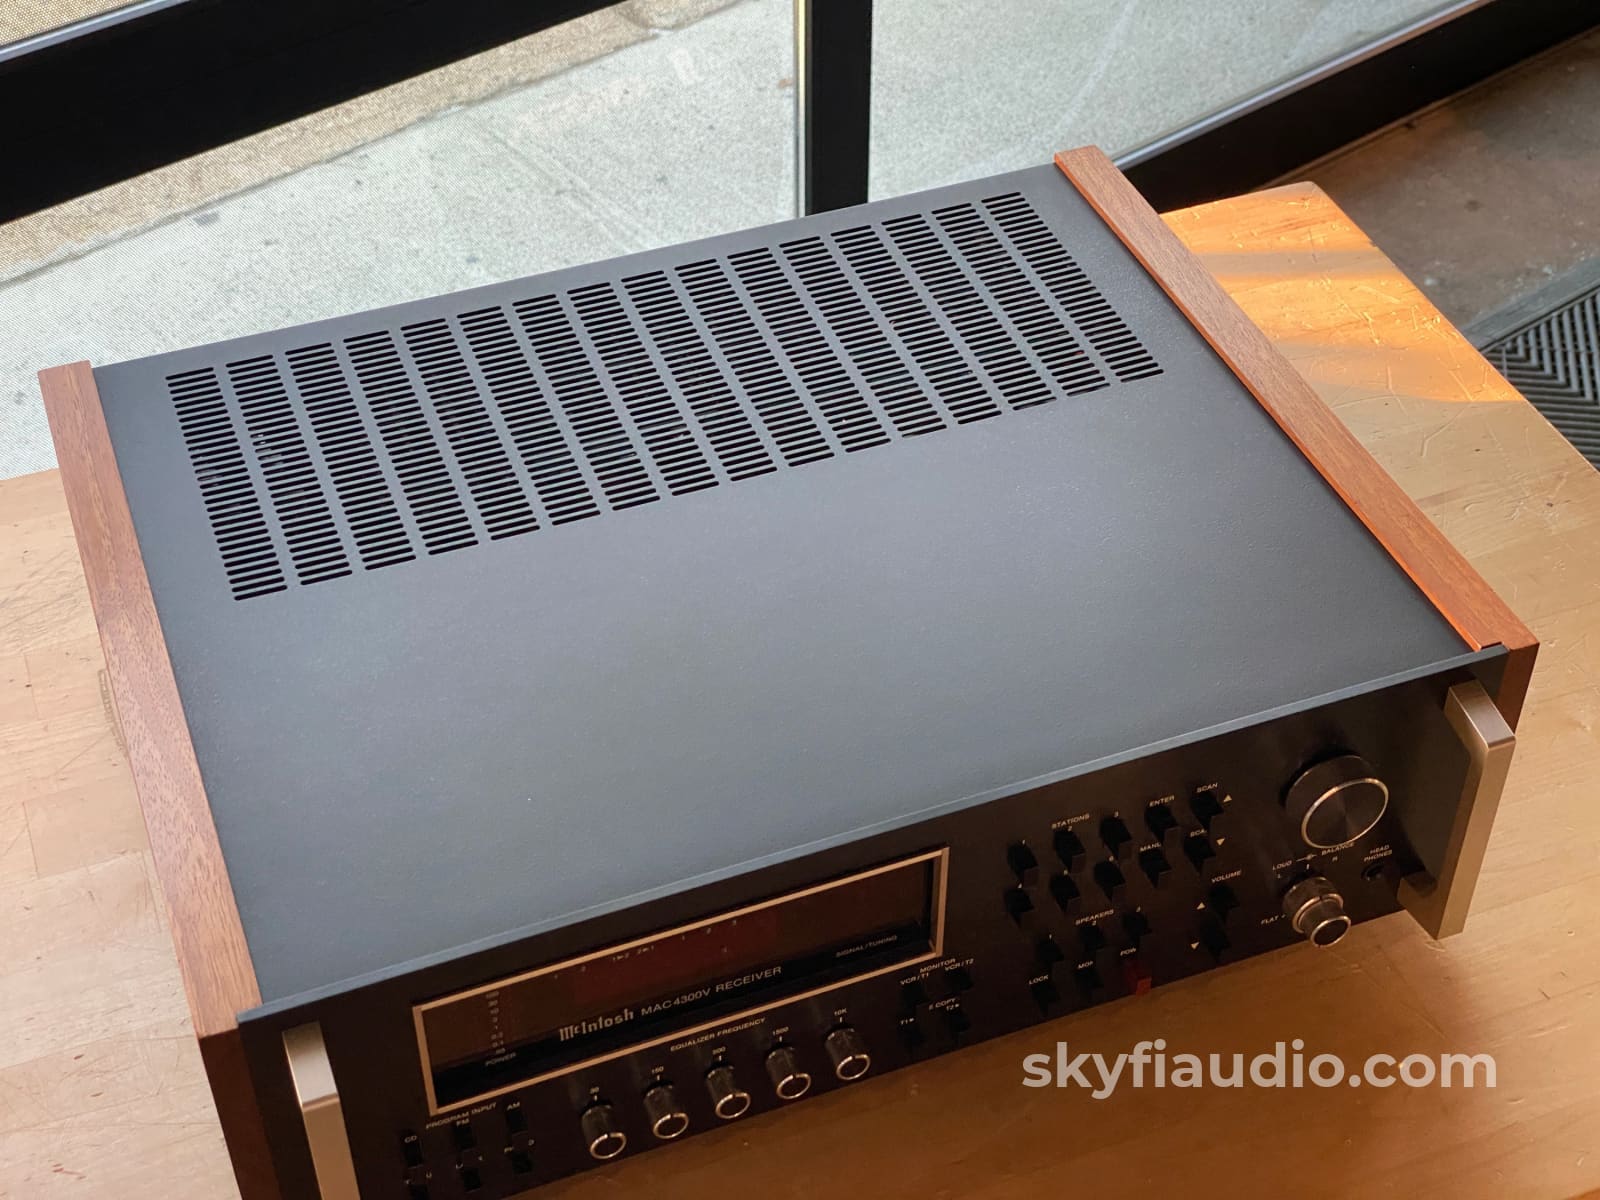 Mcintosh Mac4300V Am/Fm Receiver - Single Owner Survivor Serviced Integrated Amplifier